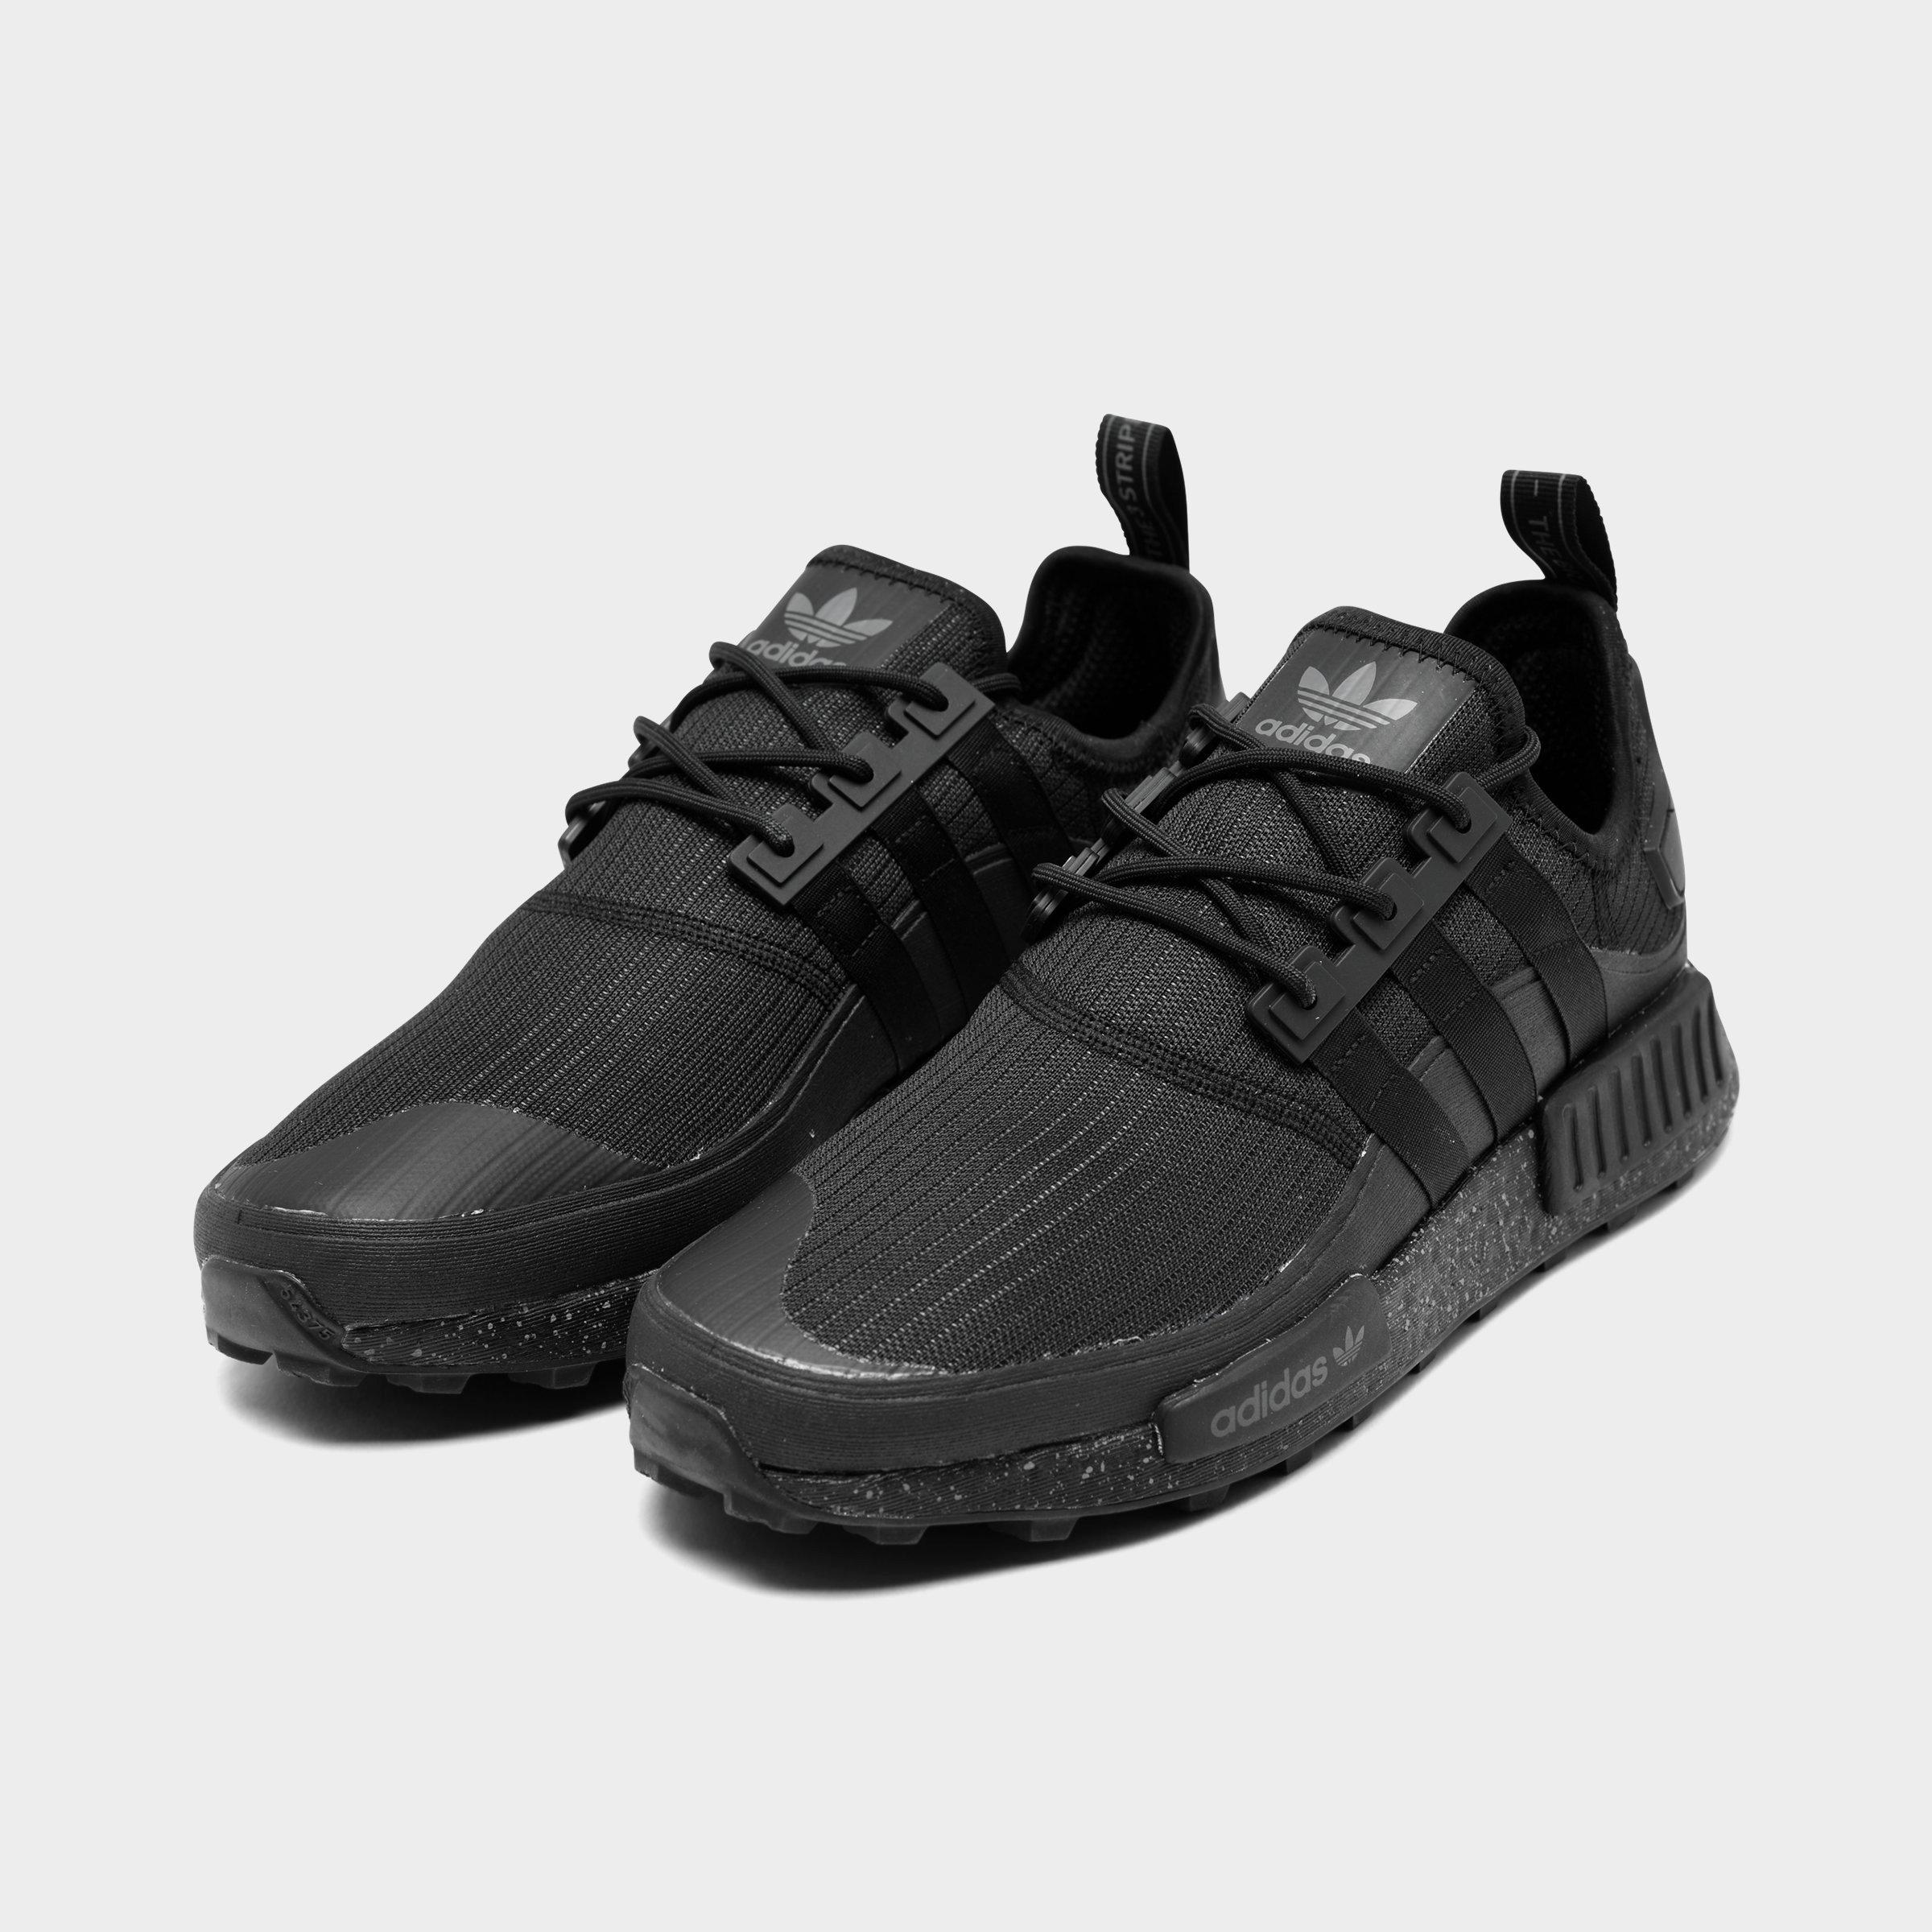 adidas nmd r1 shoes black